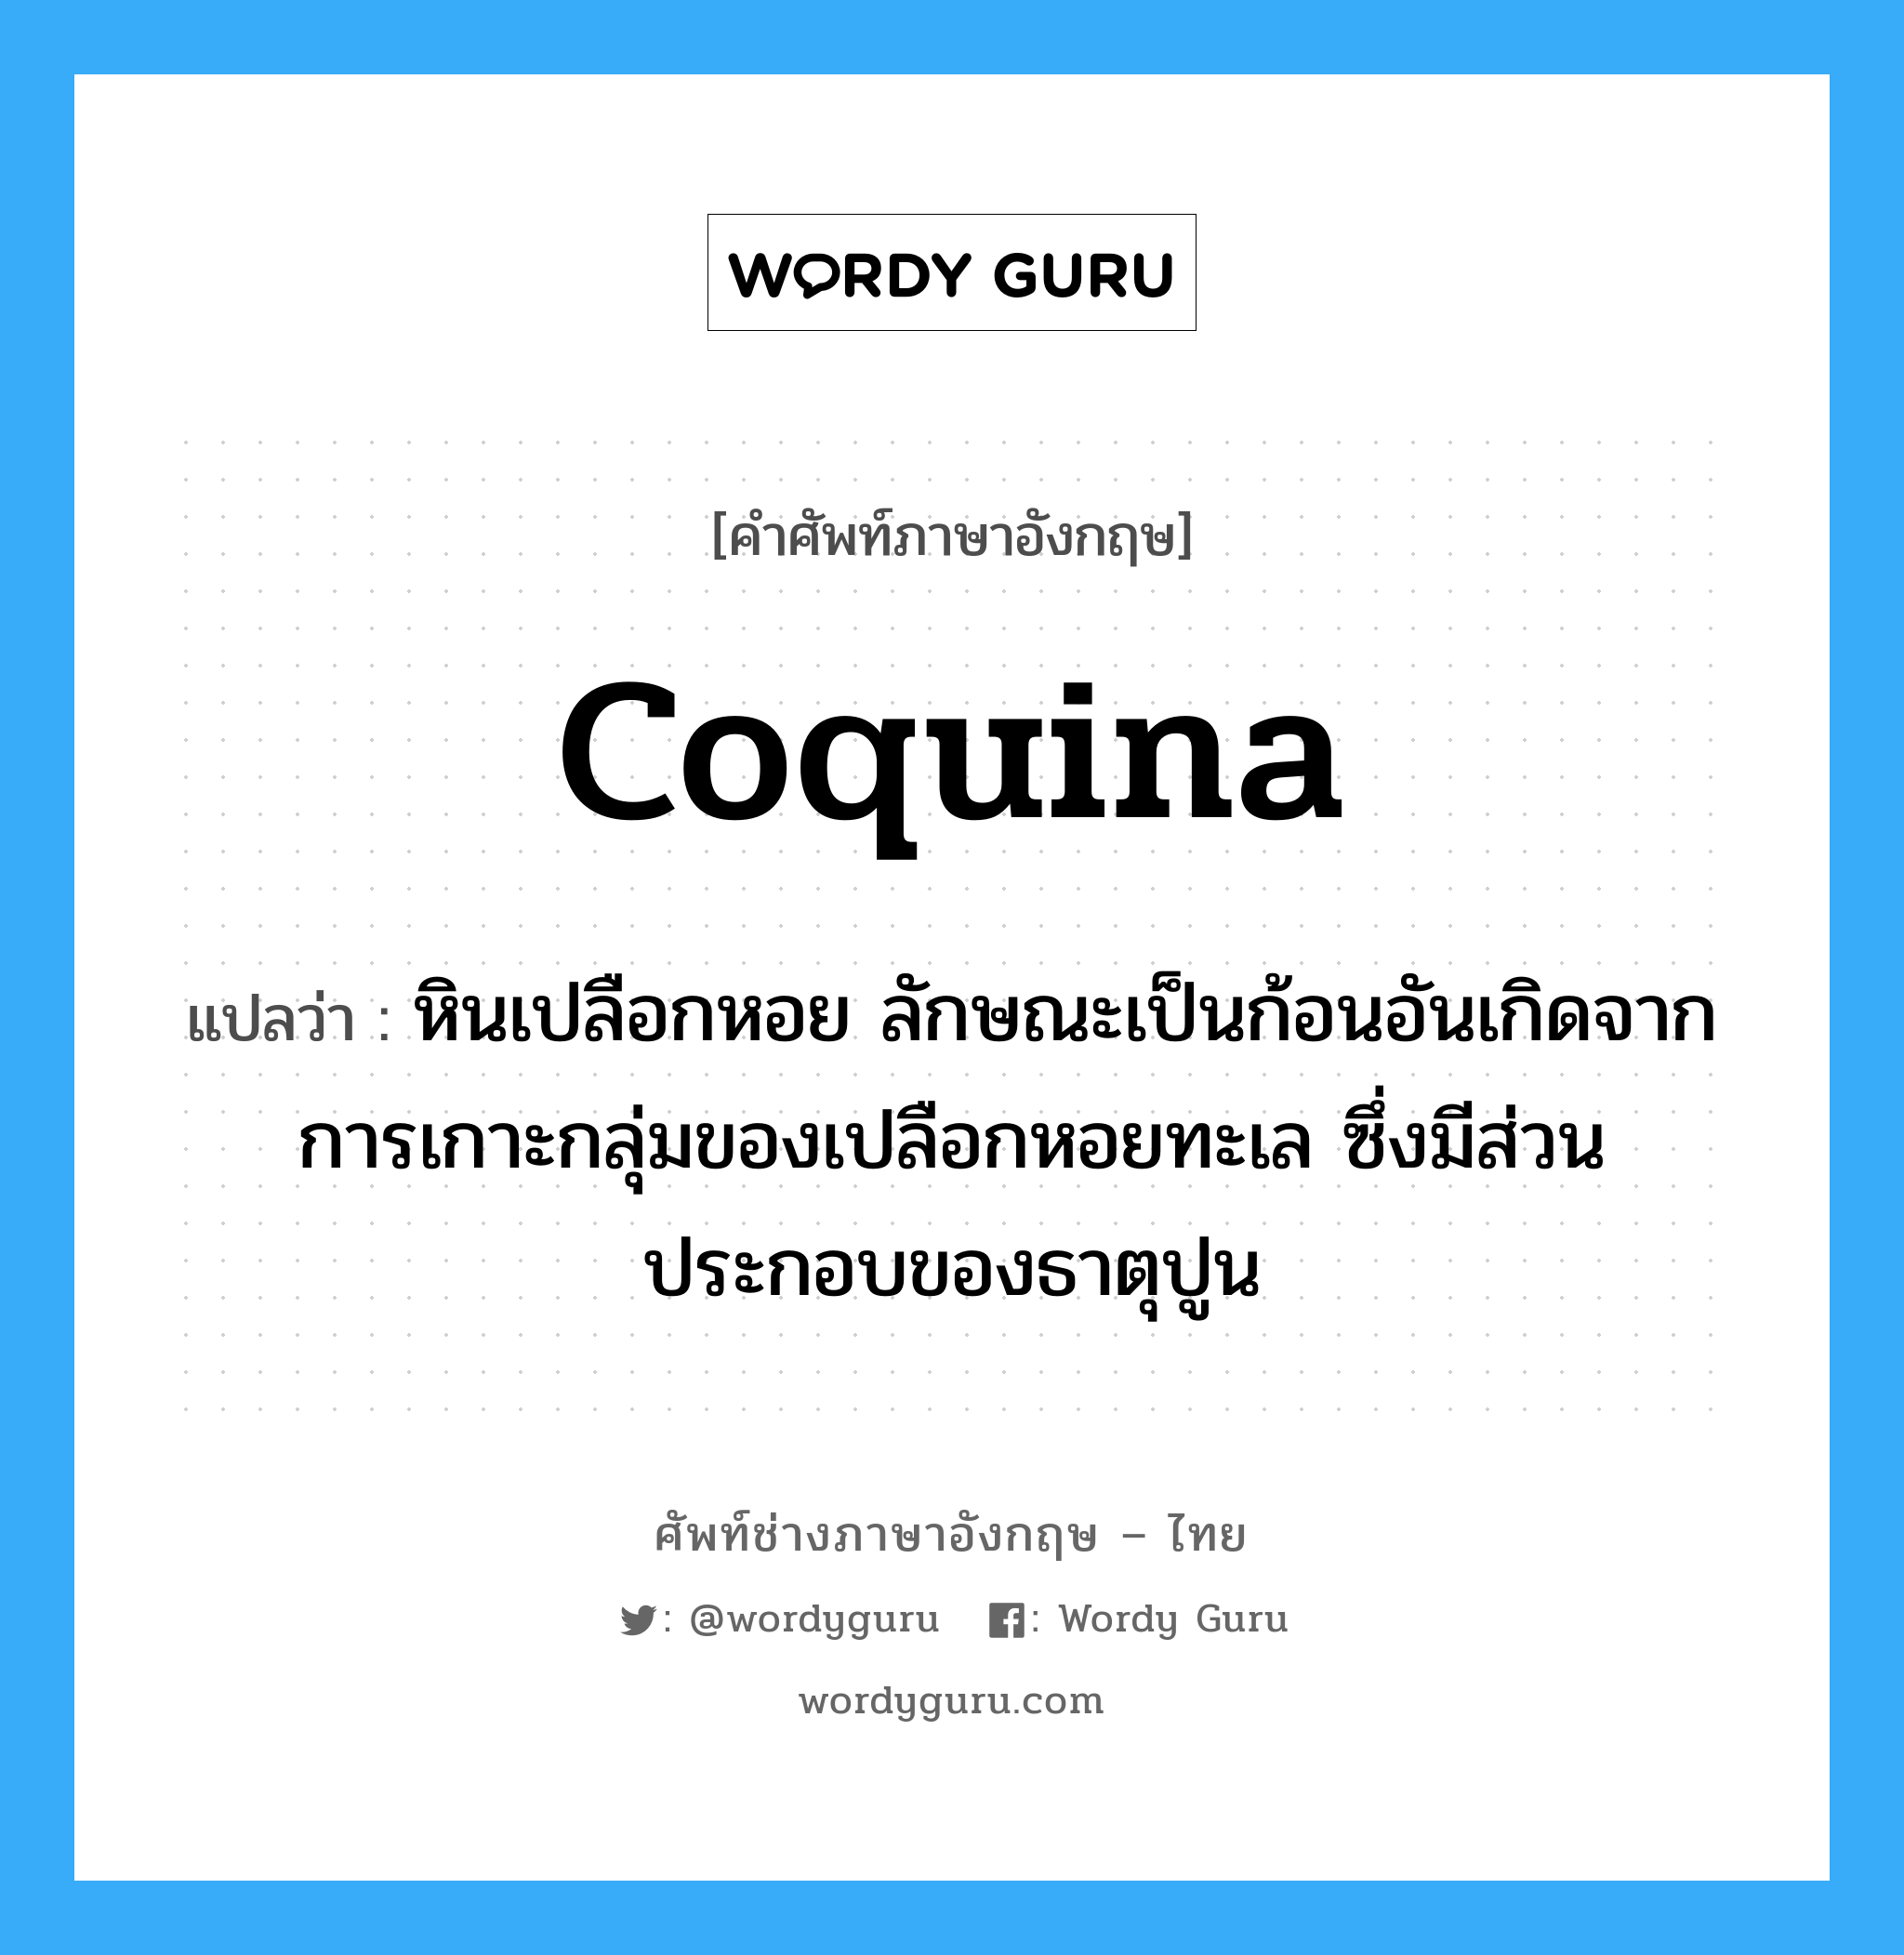 coquina แปลว่า?, คำศัพท์ช่างภาษาอังกฤษ - ไทย coquina คำศัพท์ภาษาอังกฤษ coquina แปลว่า หินเปลือกหอย ลักษณะเป็นก้อนอันเกิดจากการเกาะกลุ่มของเปลือกหอยทะเล ซึ่งมีส่วนประกอบของธาตุปูน